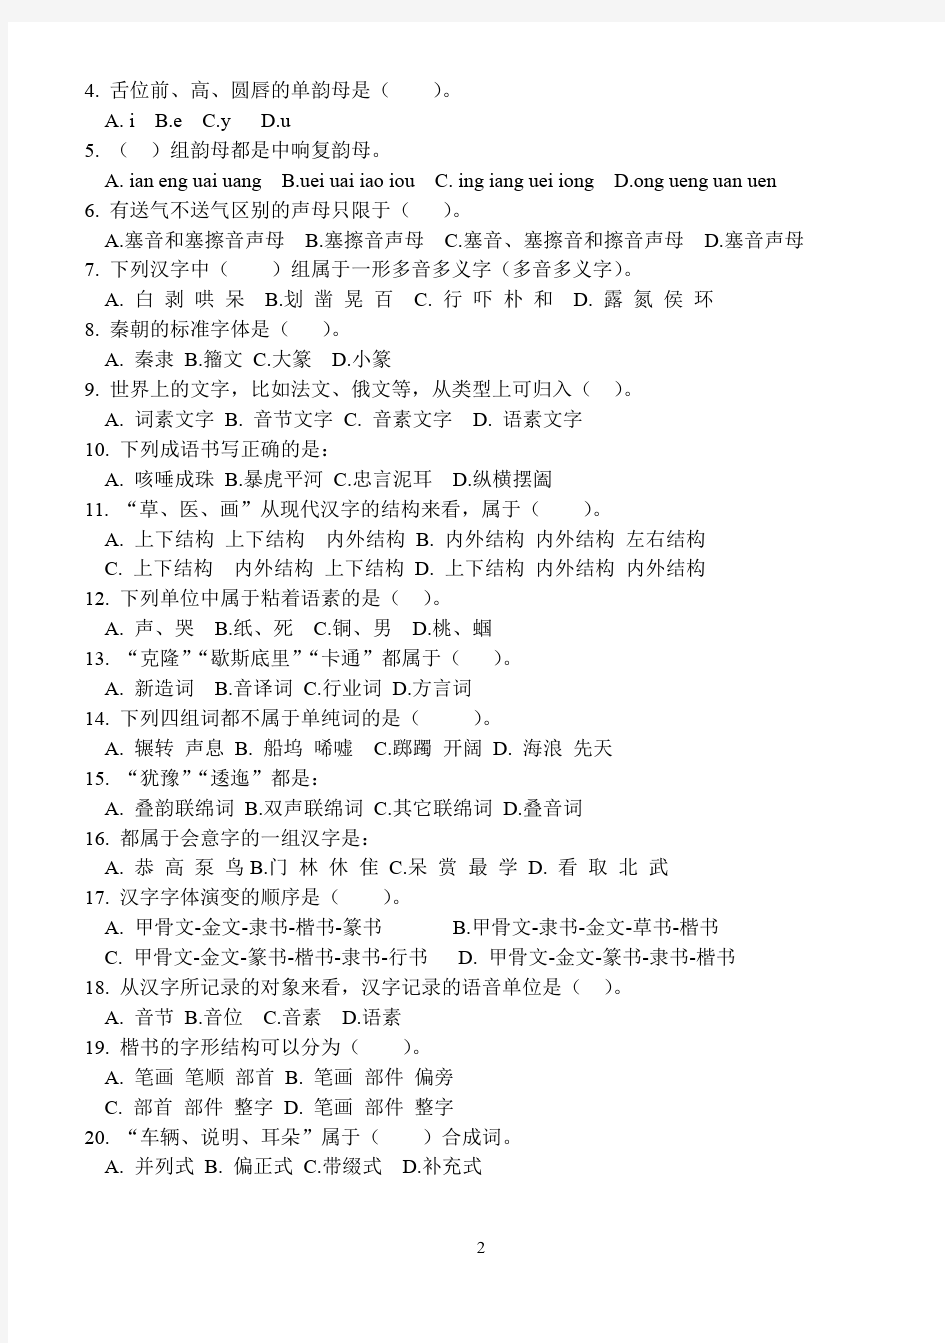 上海师范大学中文系现代汉语